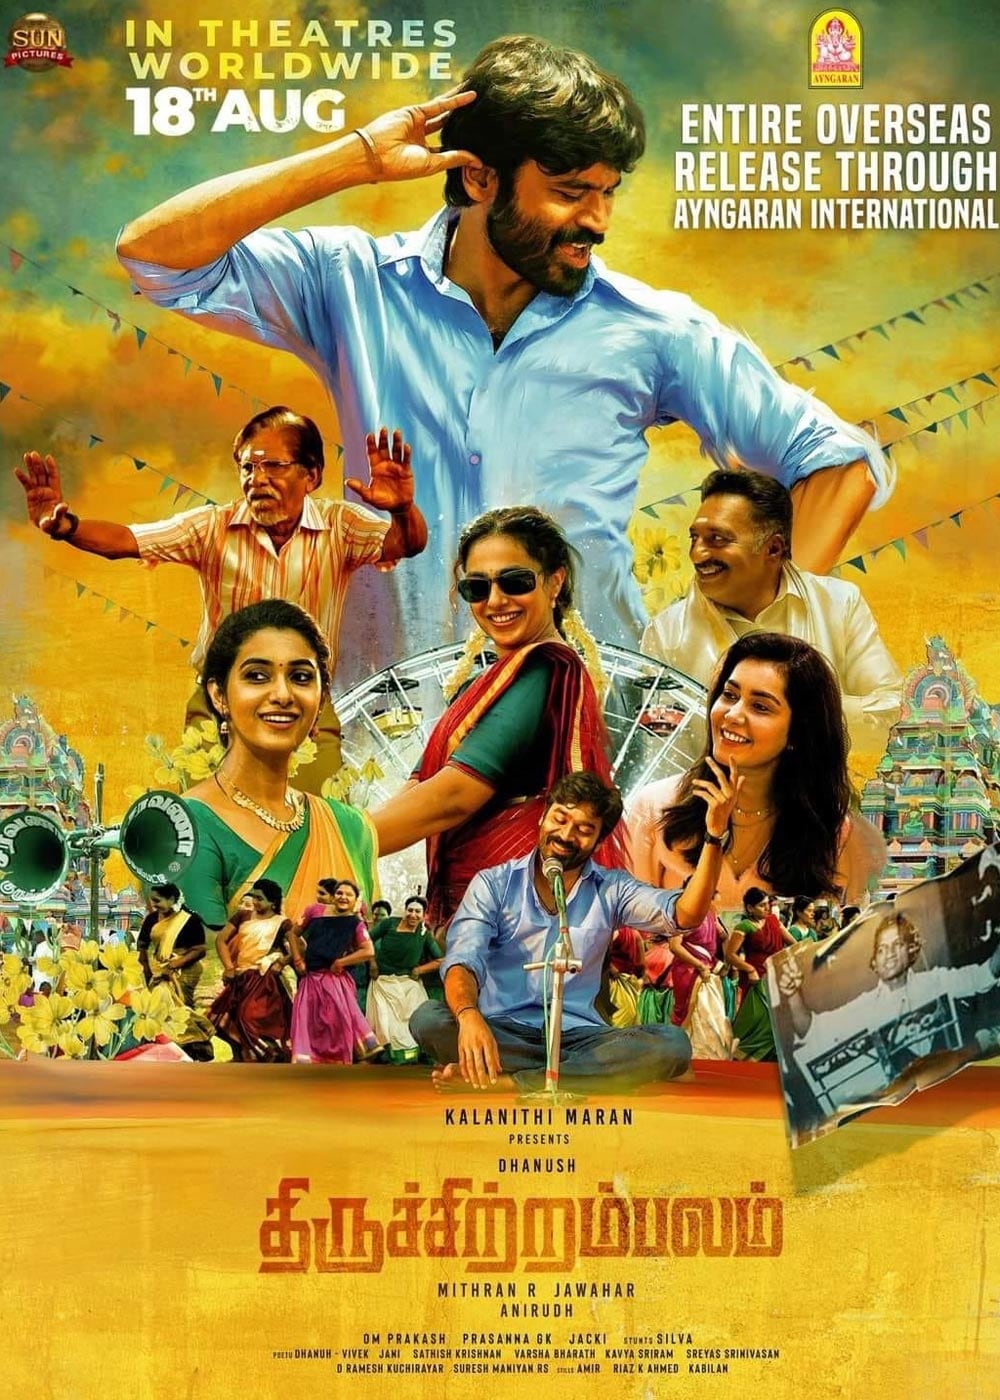 thiruchitrambalam movie review in english